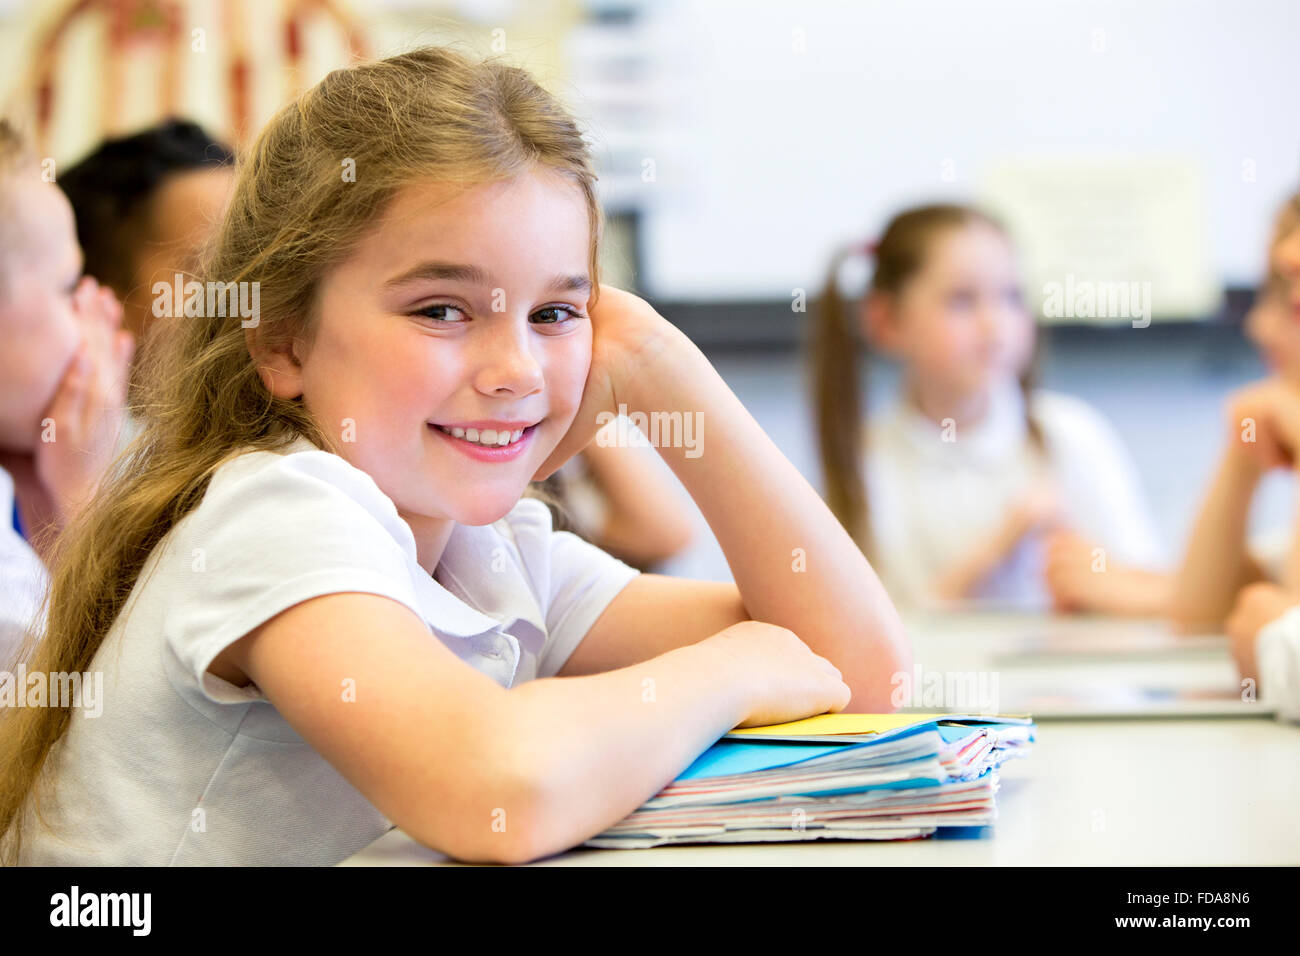 Schulmädchen lächelt in die Kamera, als sie an ihrem Schreibtisch beim stillstehen auf einen großen Haufen Papierkram sitzt. Stockfoto